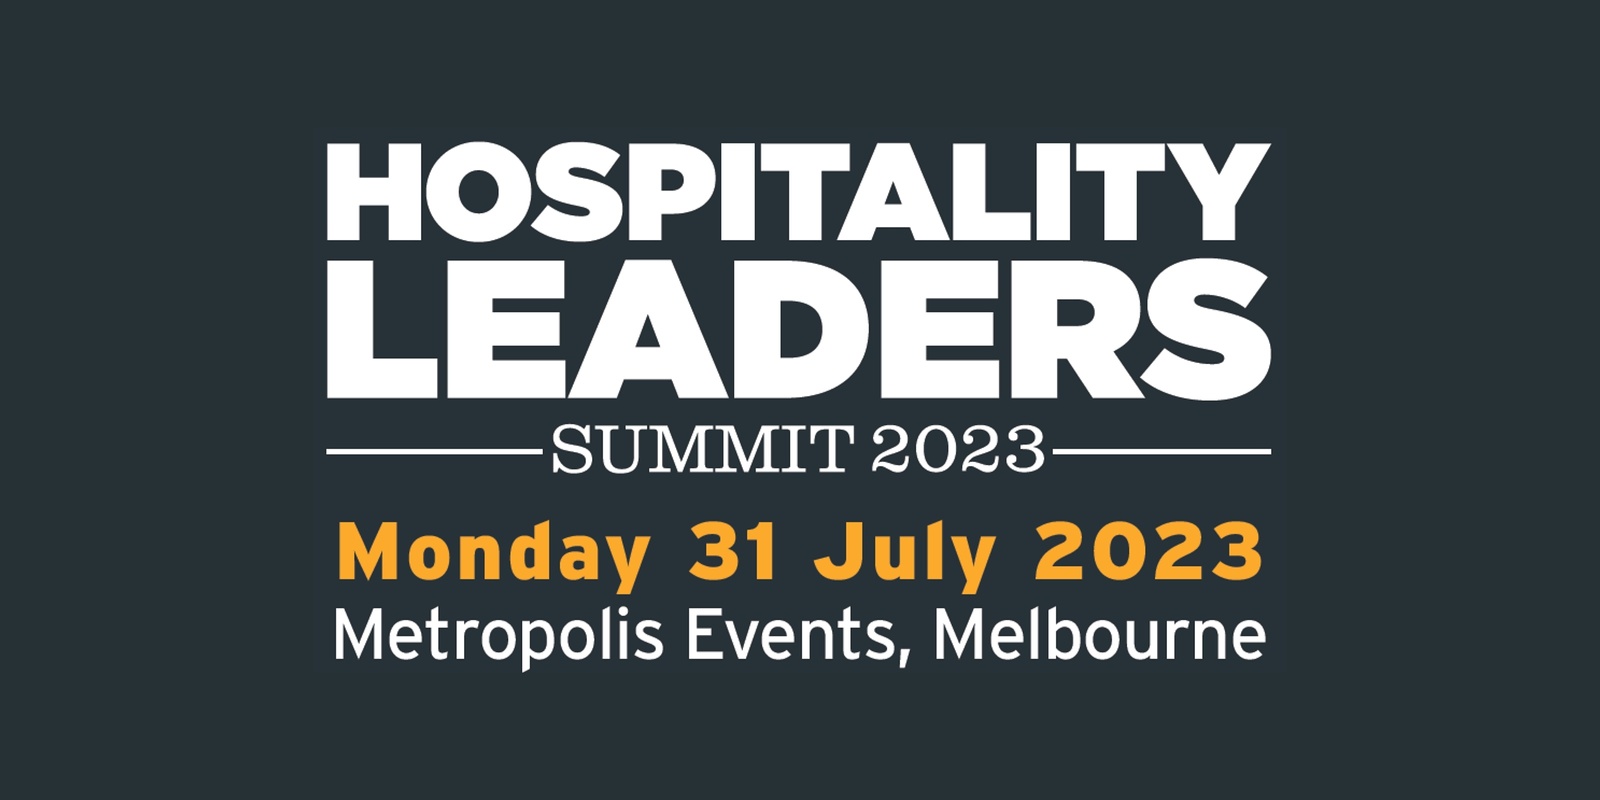 Hospitality Leaders Summit 2023